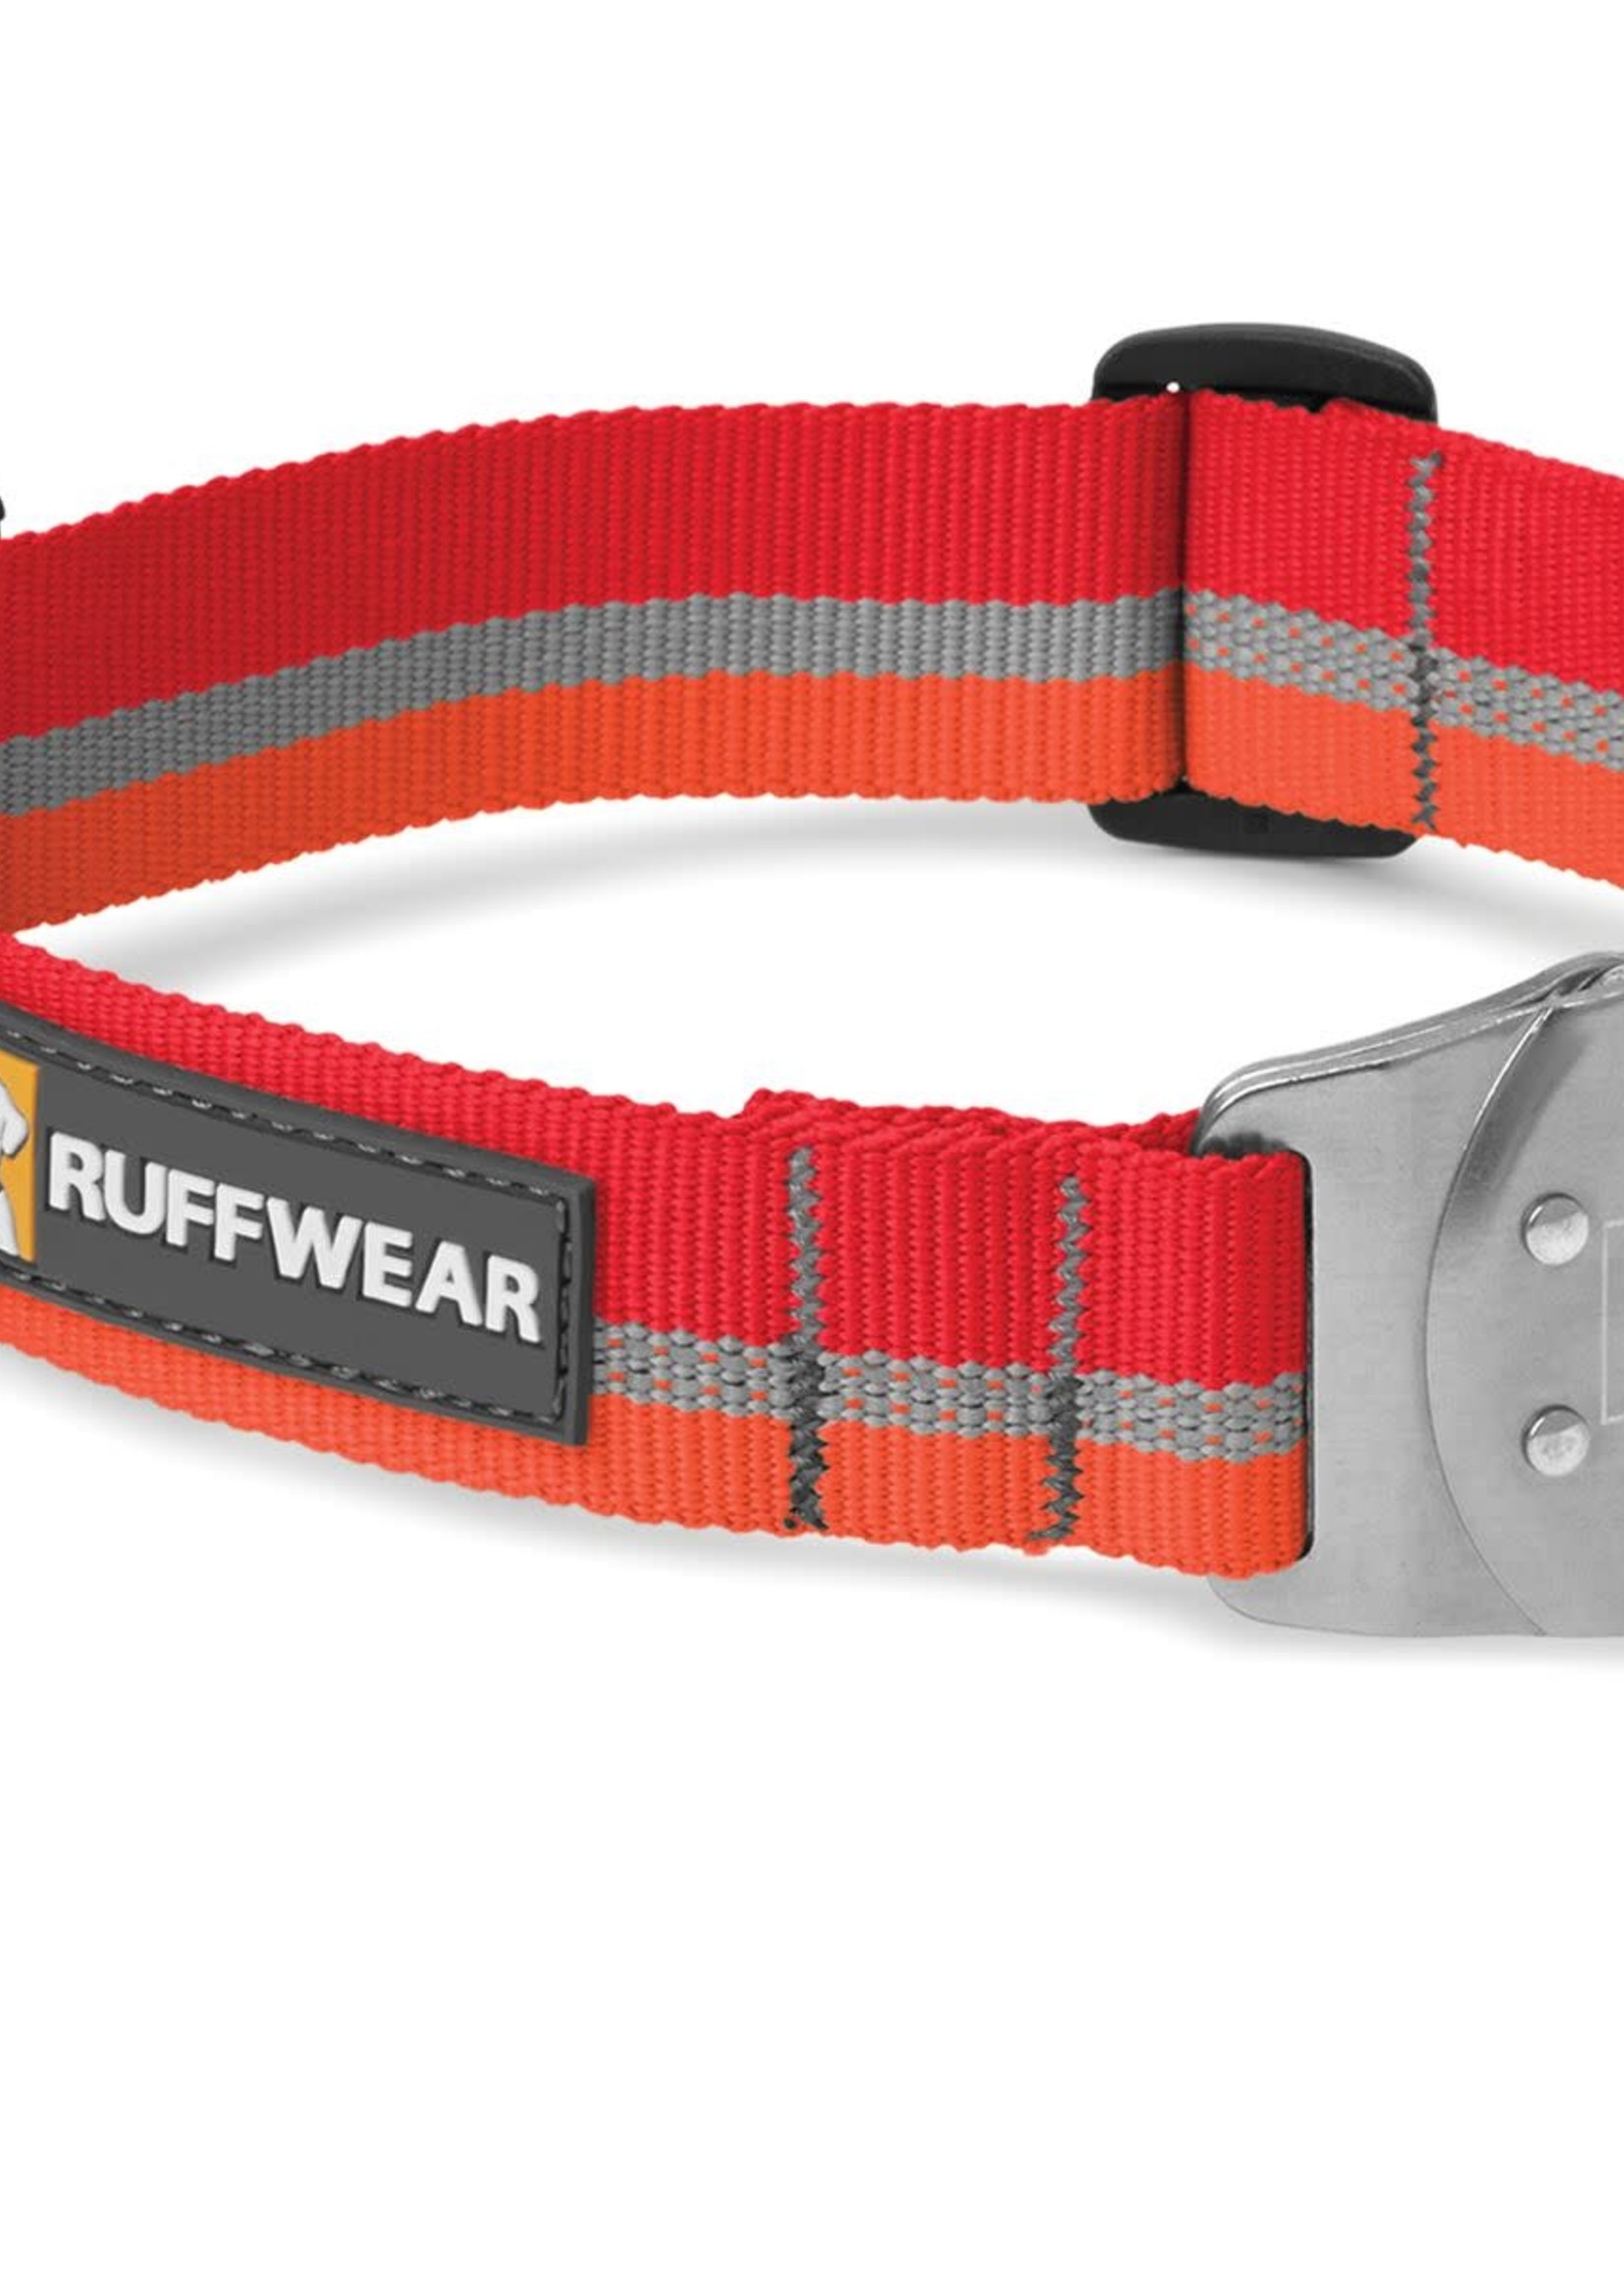 RUFFWEAR RUFFWEAR Top Rope Collar Red Large